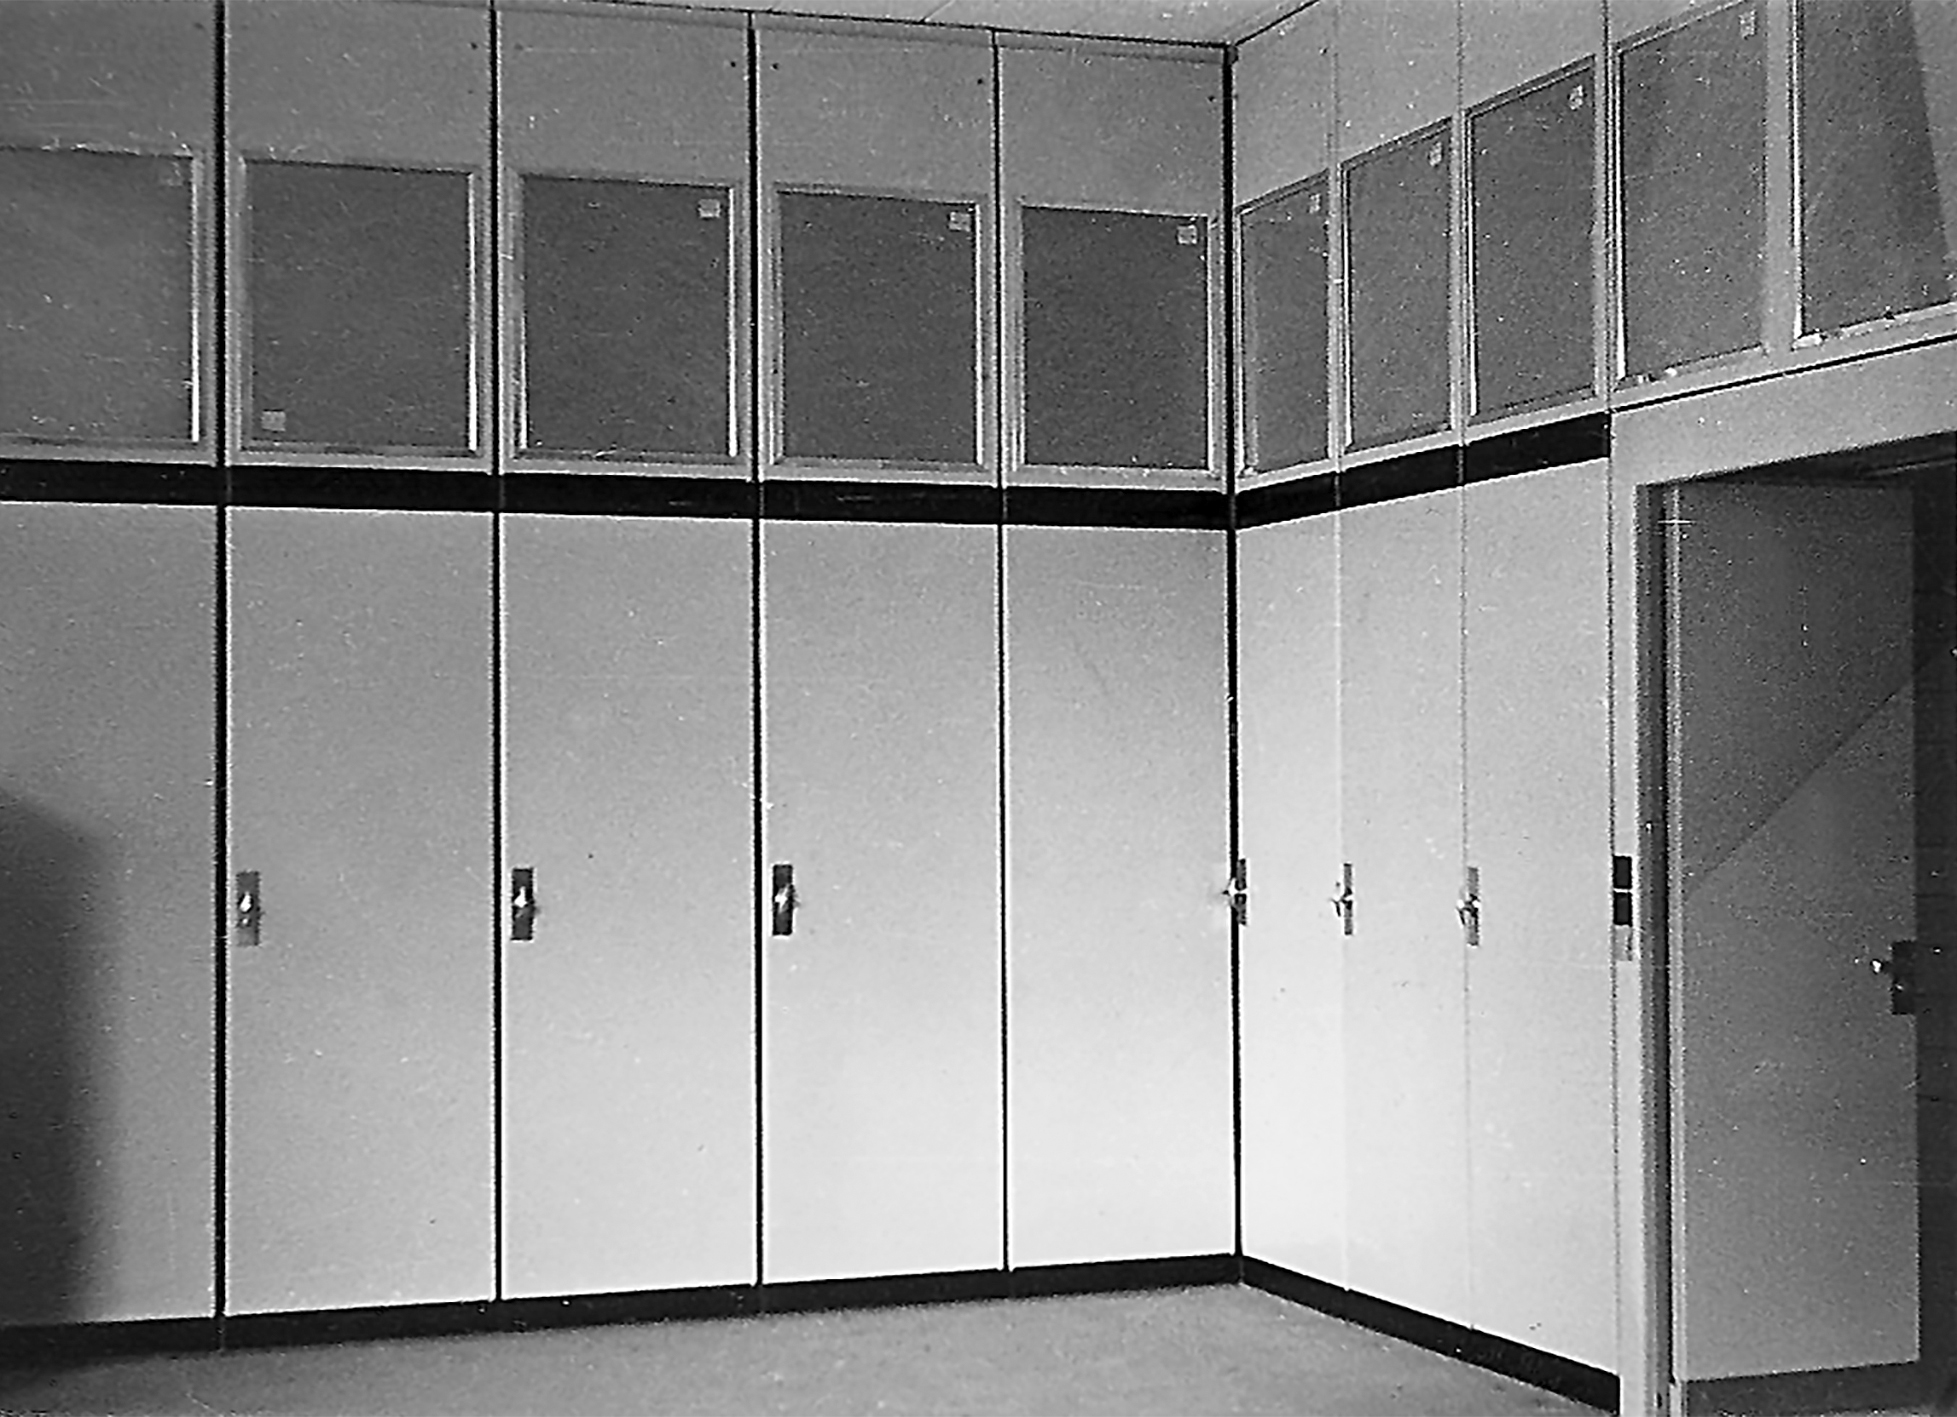 Aménagement des bureaux avec des cloisons-armoires insonorisées amovibles (système breveté), 1946-1948. Centre de chèques postaux, Bruxelles (V. Bourgeois, arch., 1937-1949).